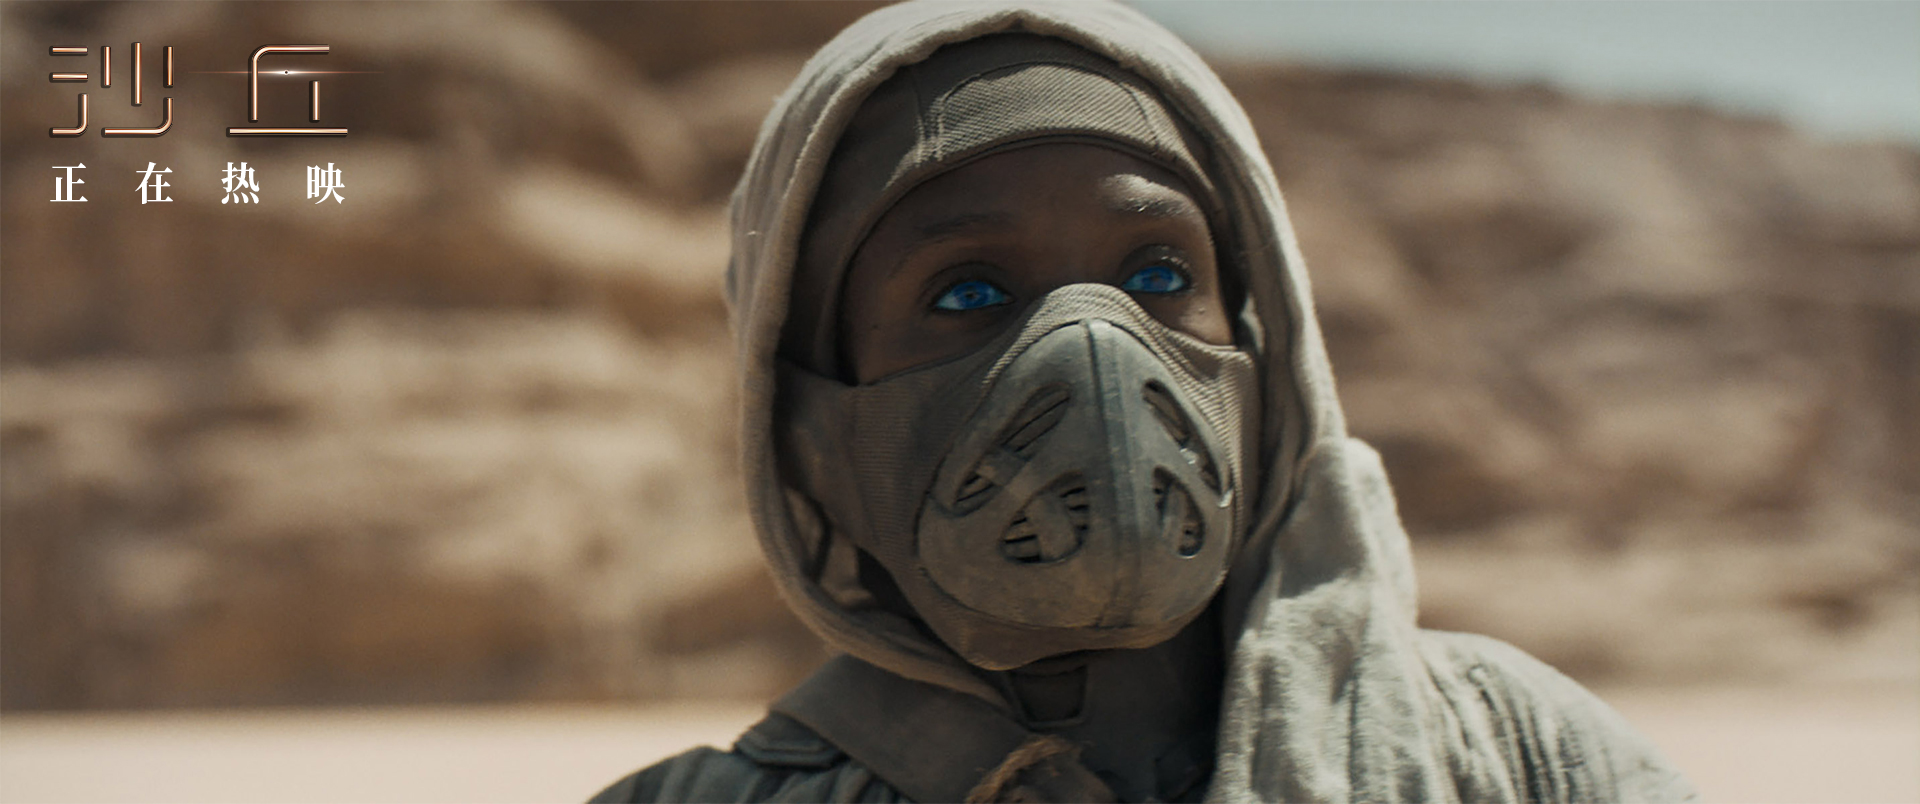 《沙丘》全球票房超3亿美元 导演维伦纽瓦出镜解